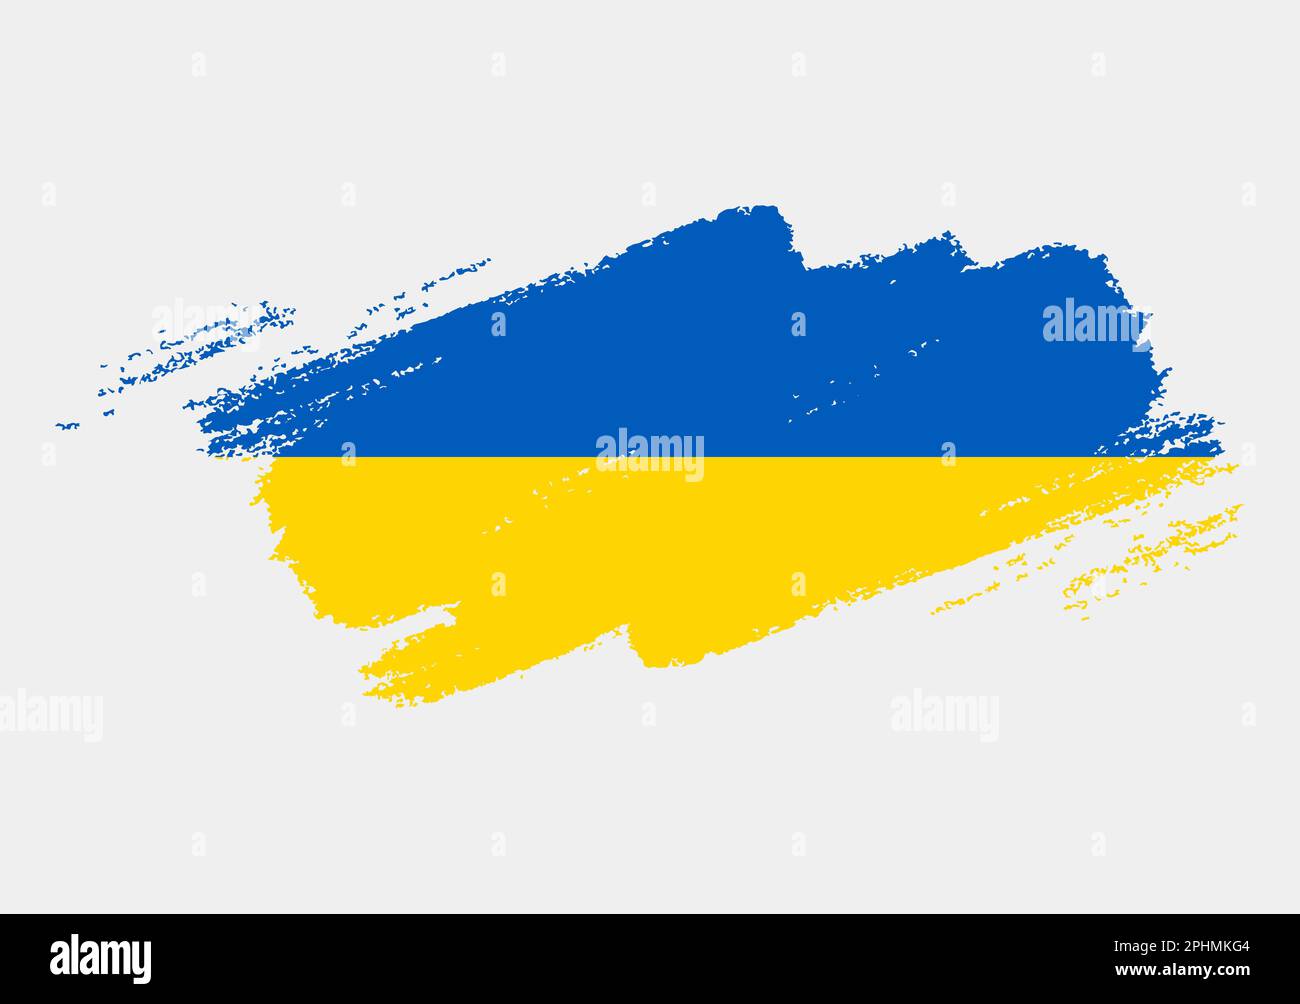 Grunge artistique drapeau brush de l'Ukraine isolé sur fond blanc. Texture élégante du drapeau national Illustration de Vecteur